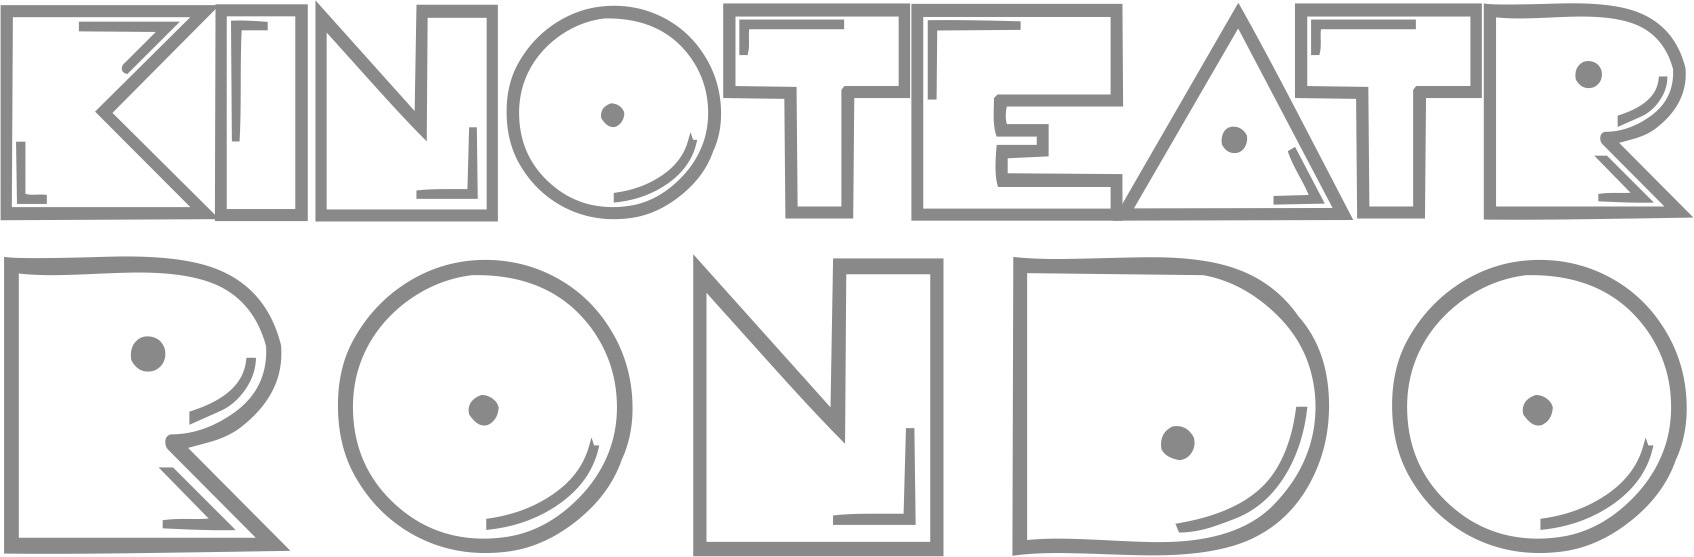 Obrazek przedstawia logotyp Kinoteatru Rondo